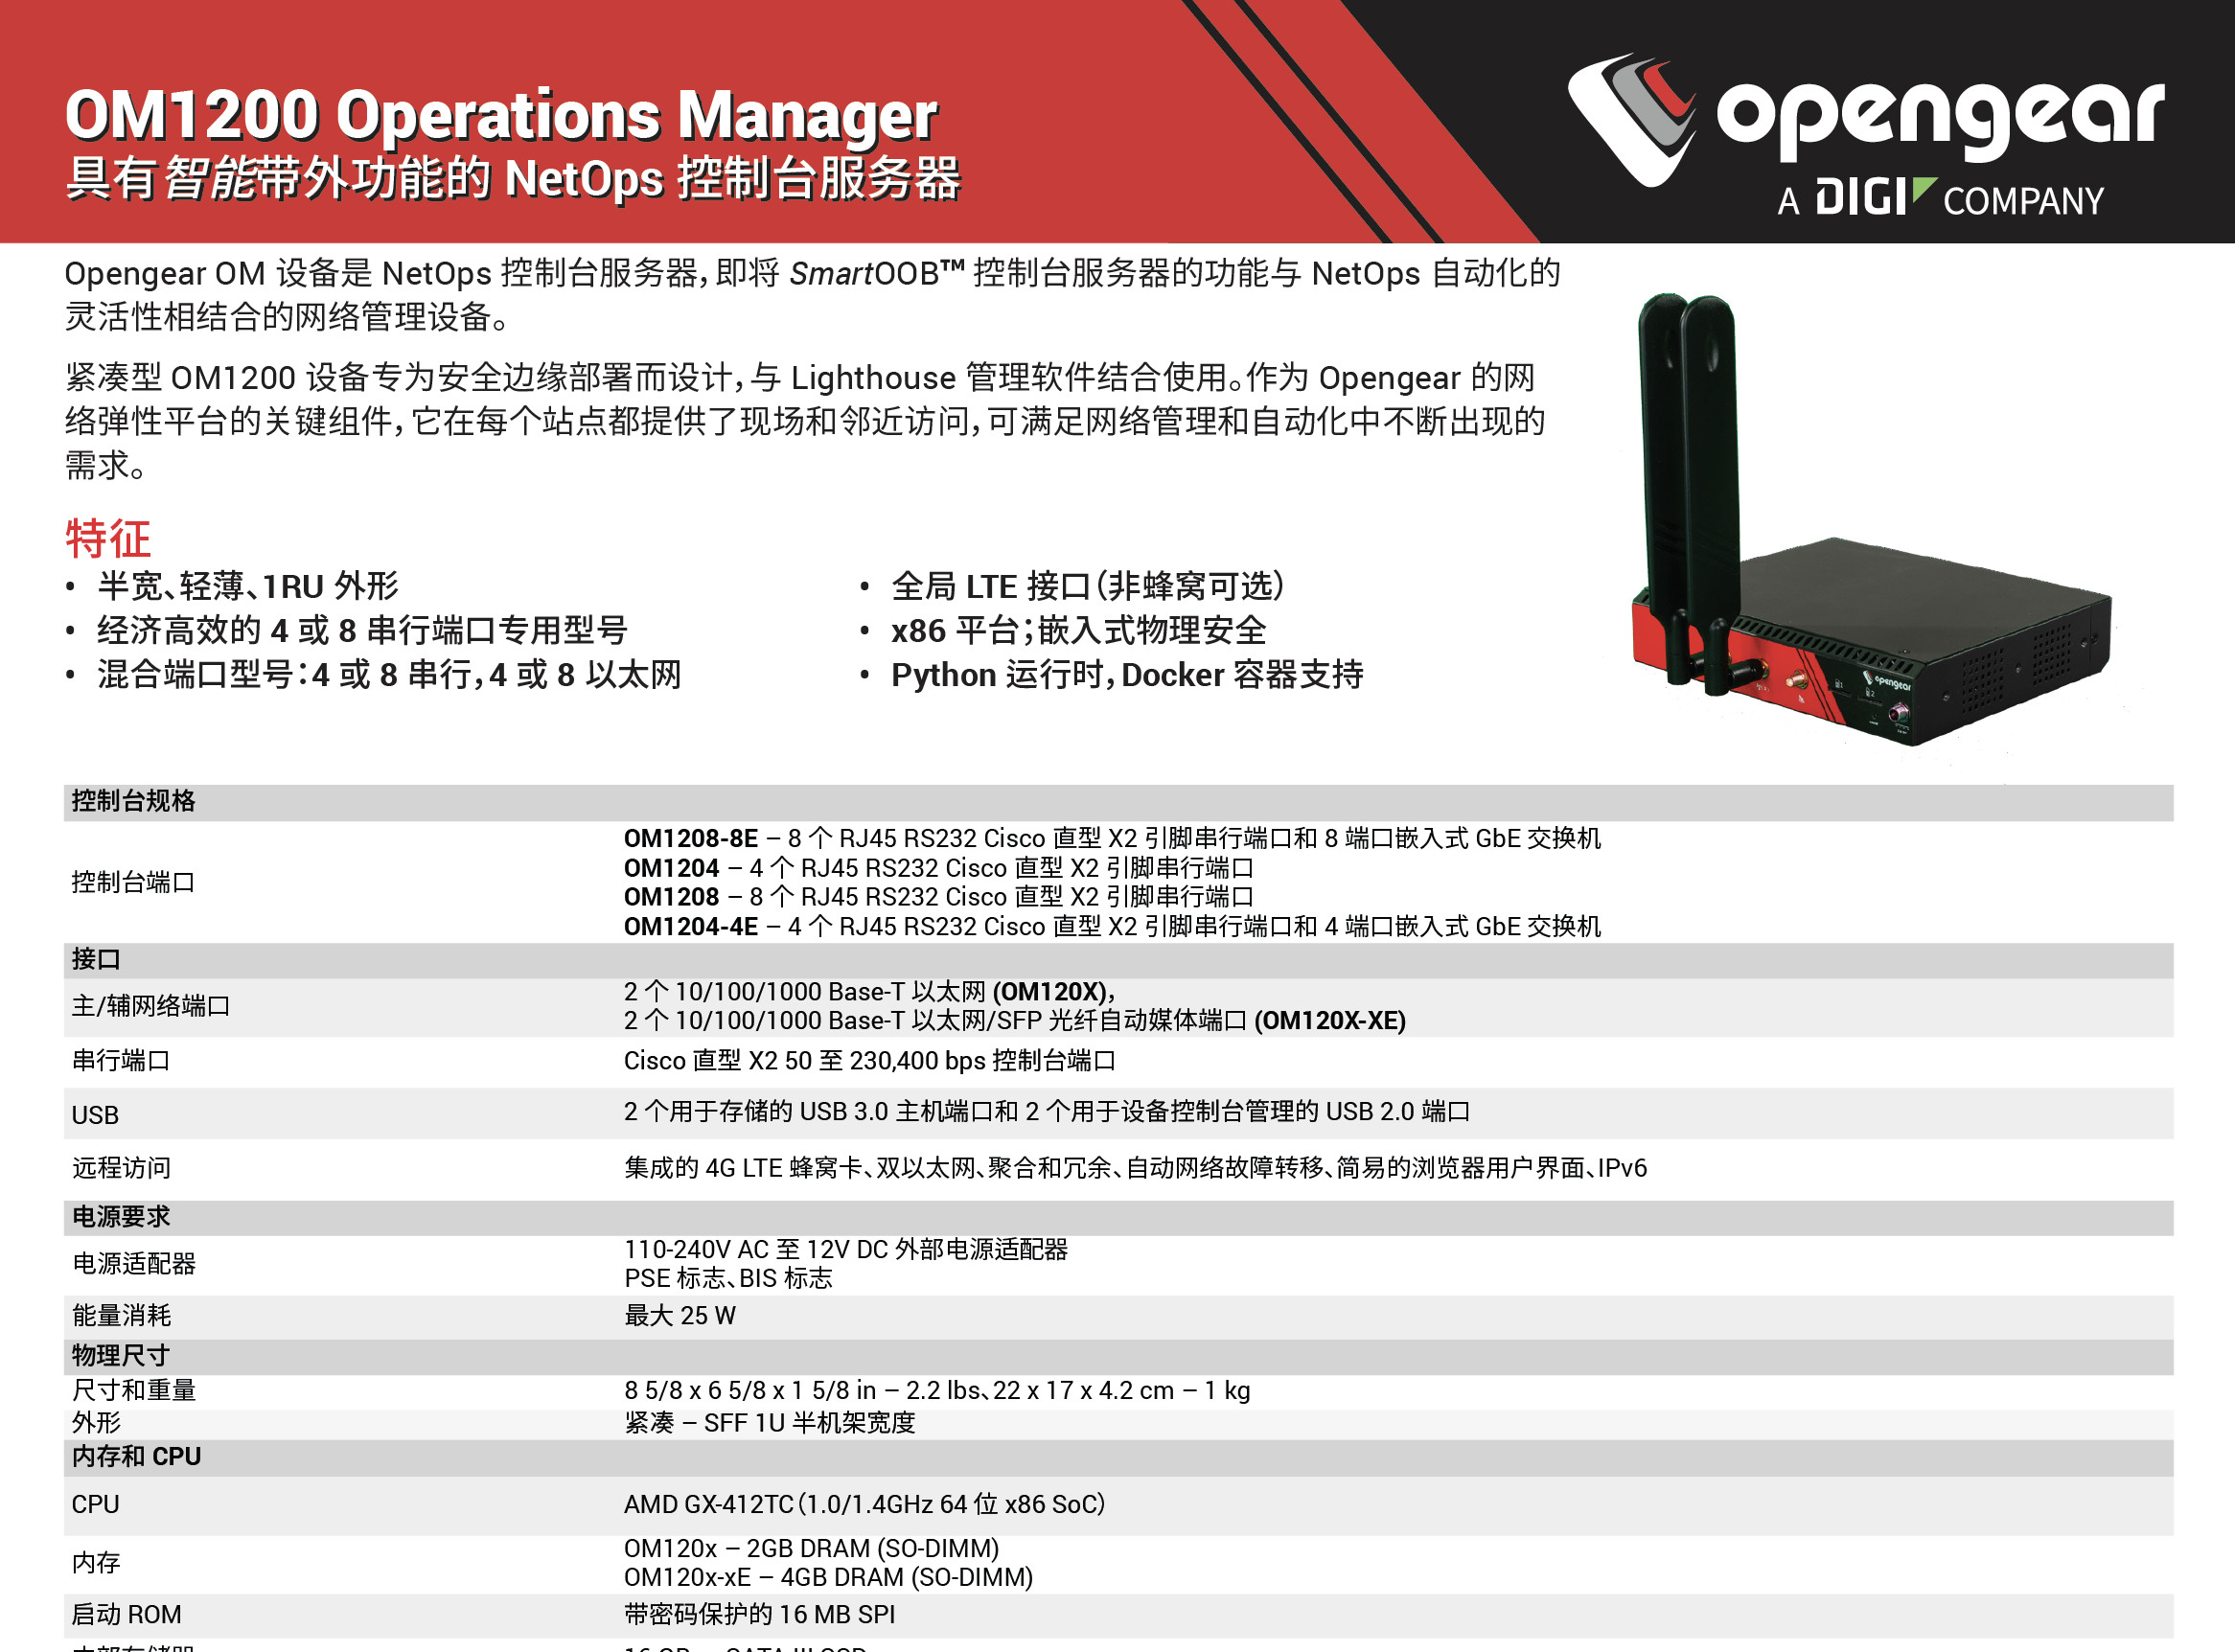 Opengear 1204、Opengear 1208、Opengear OM1204、Opengear OM1204-4E、Opengear OM1204-4E-L、Opengear OM1204-L、Opengear OM1208、Opengear OM1208-8E、Opengear OM1208-8E-L、Opengear OM1208-L